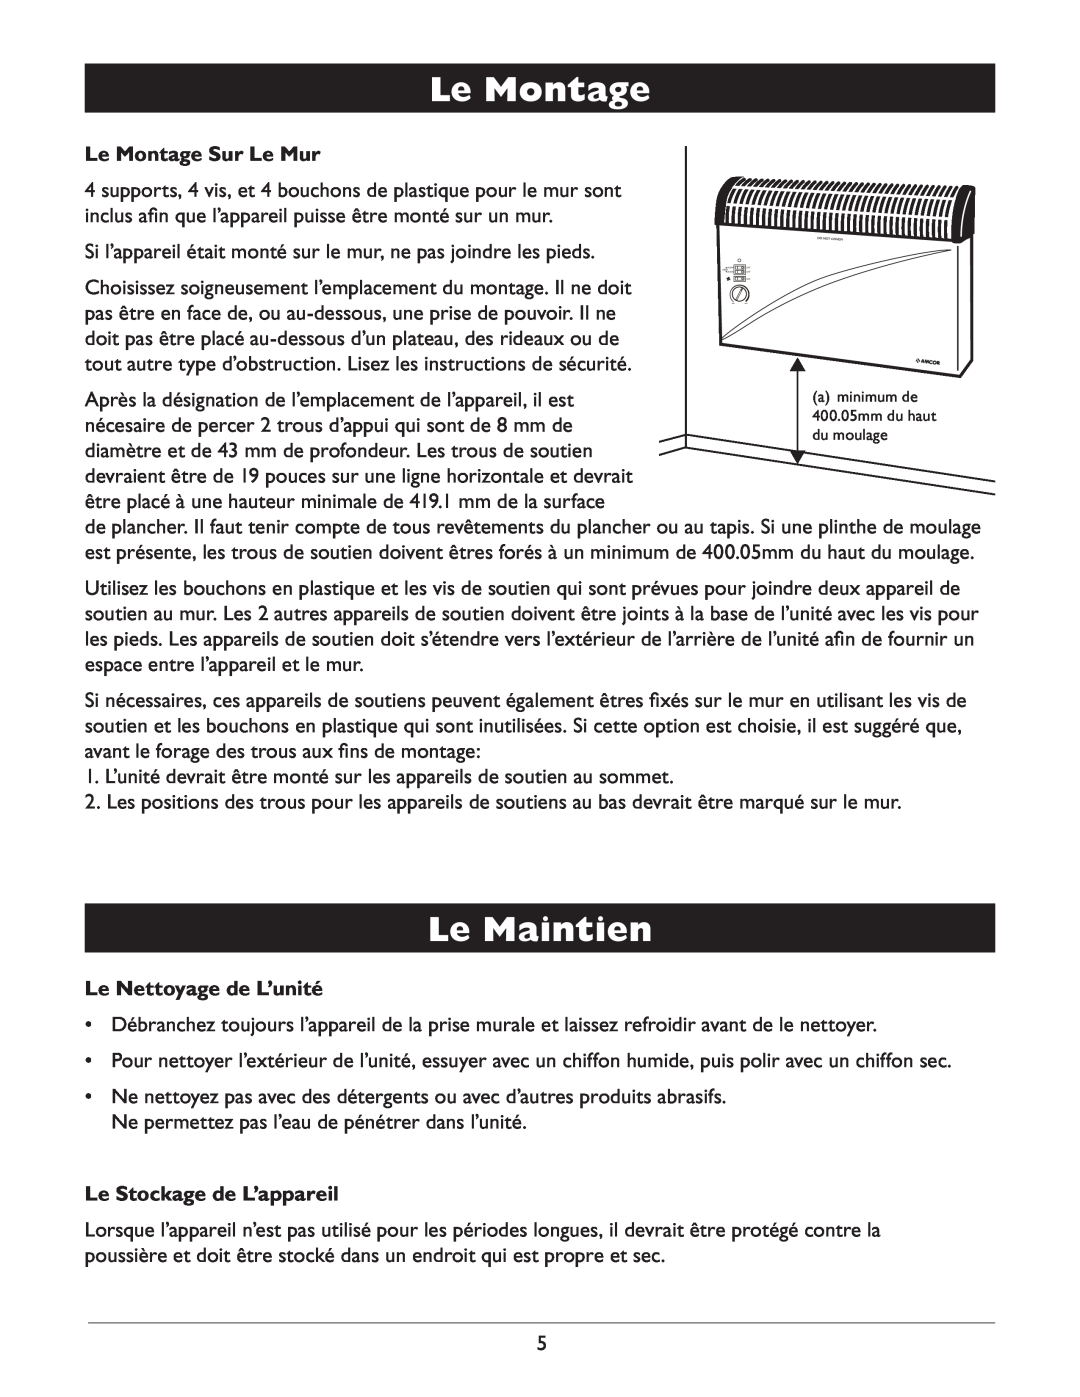 Amcor AMH9 owner manual Le Maintien, Le Montage Sur Le Mur, Le Nettoyage de L’unité, Le Stockage de L’appareil 